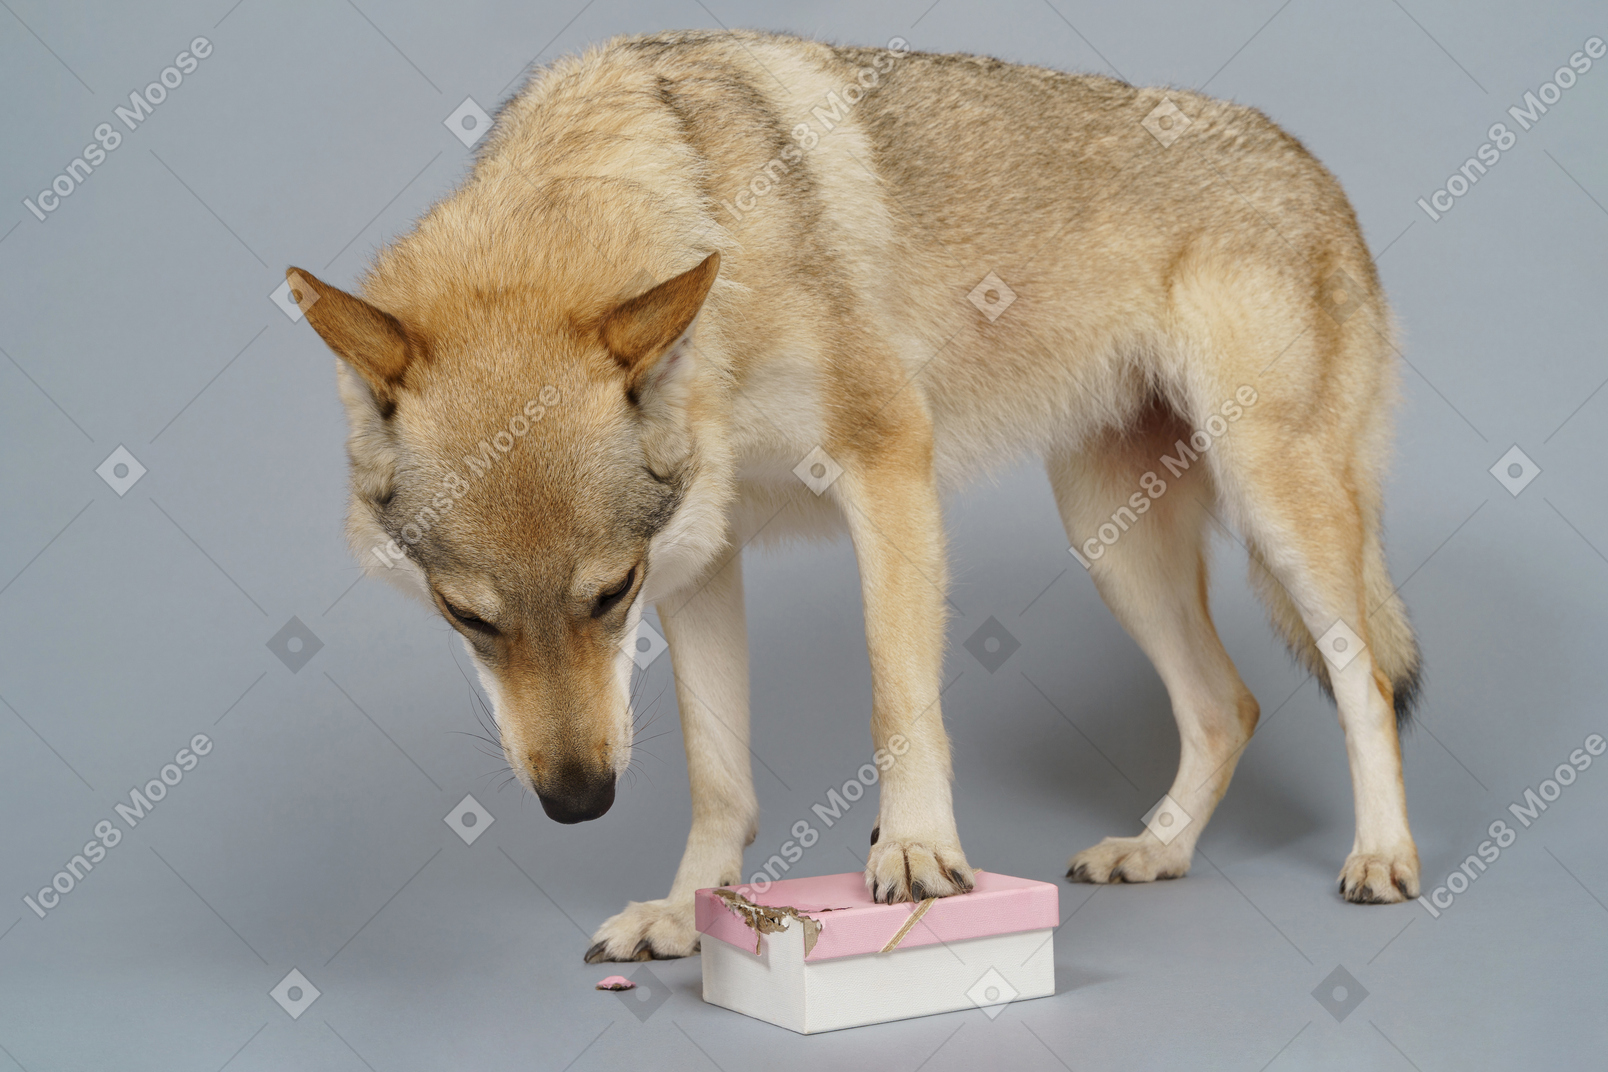 De cuerpo entero de un perro parecido a un lobo que busca algo en una caja